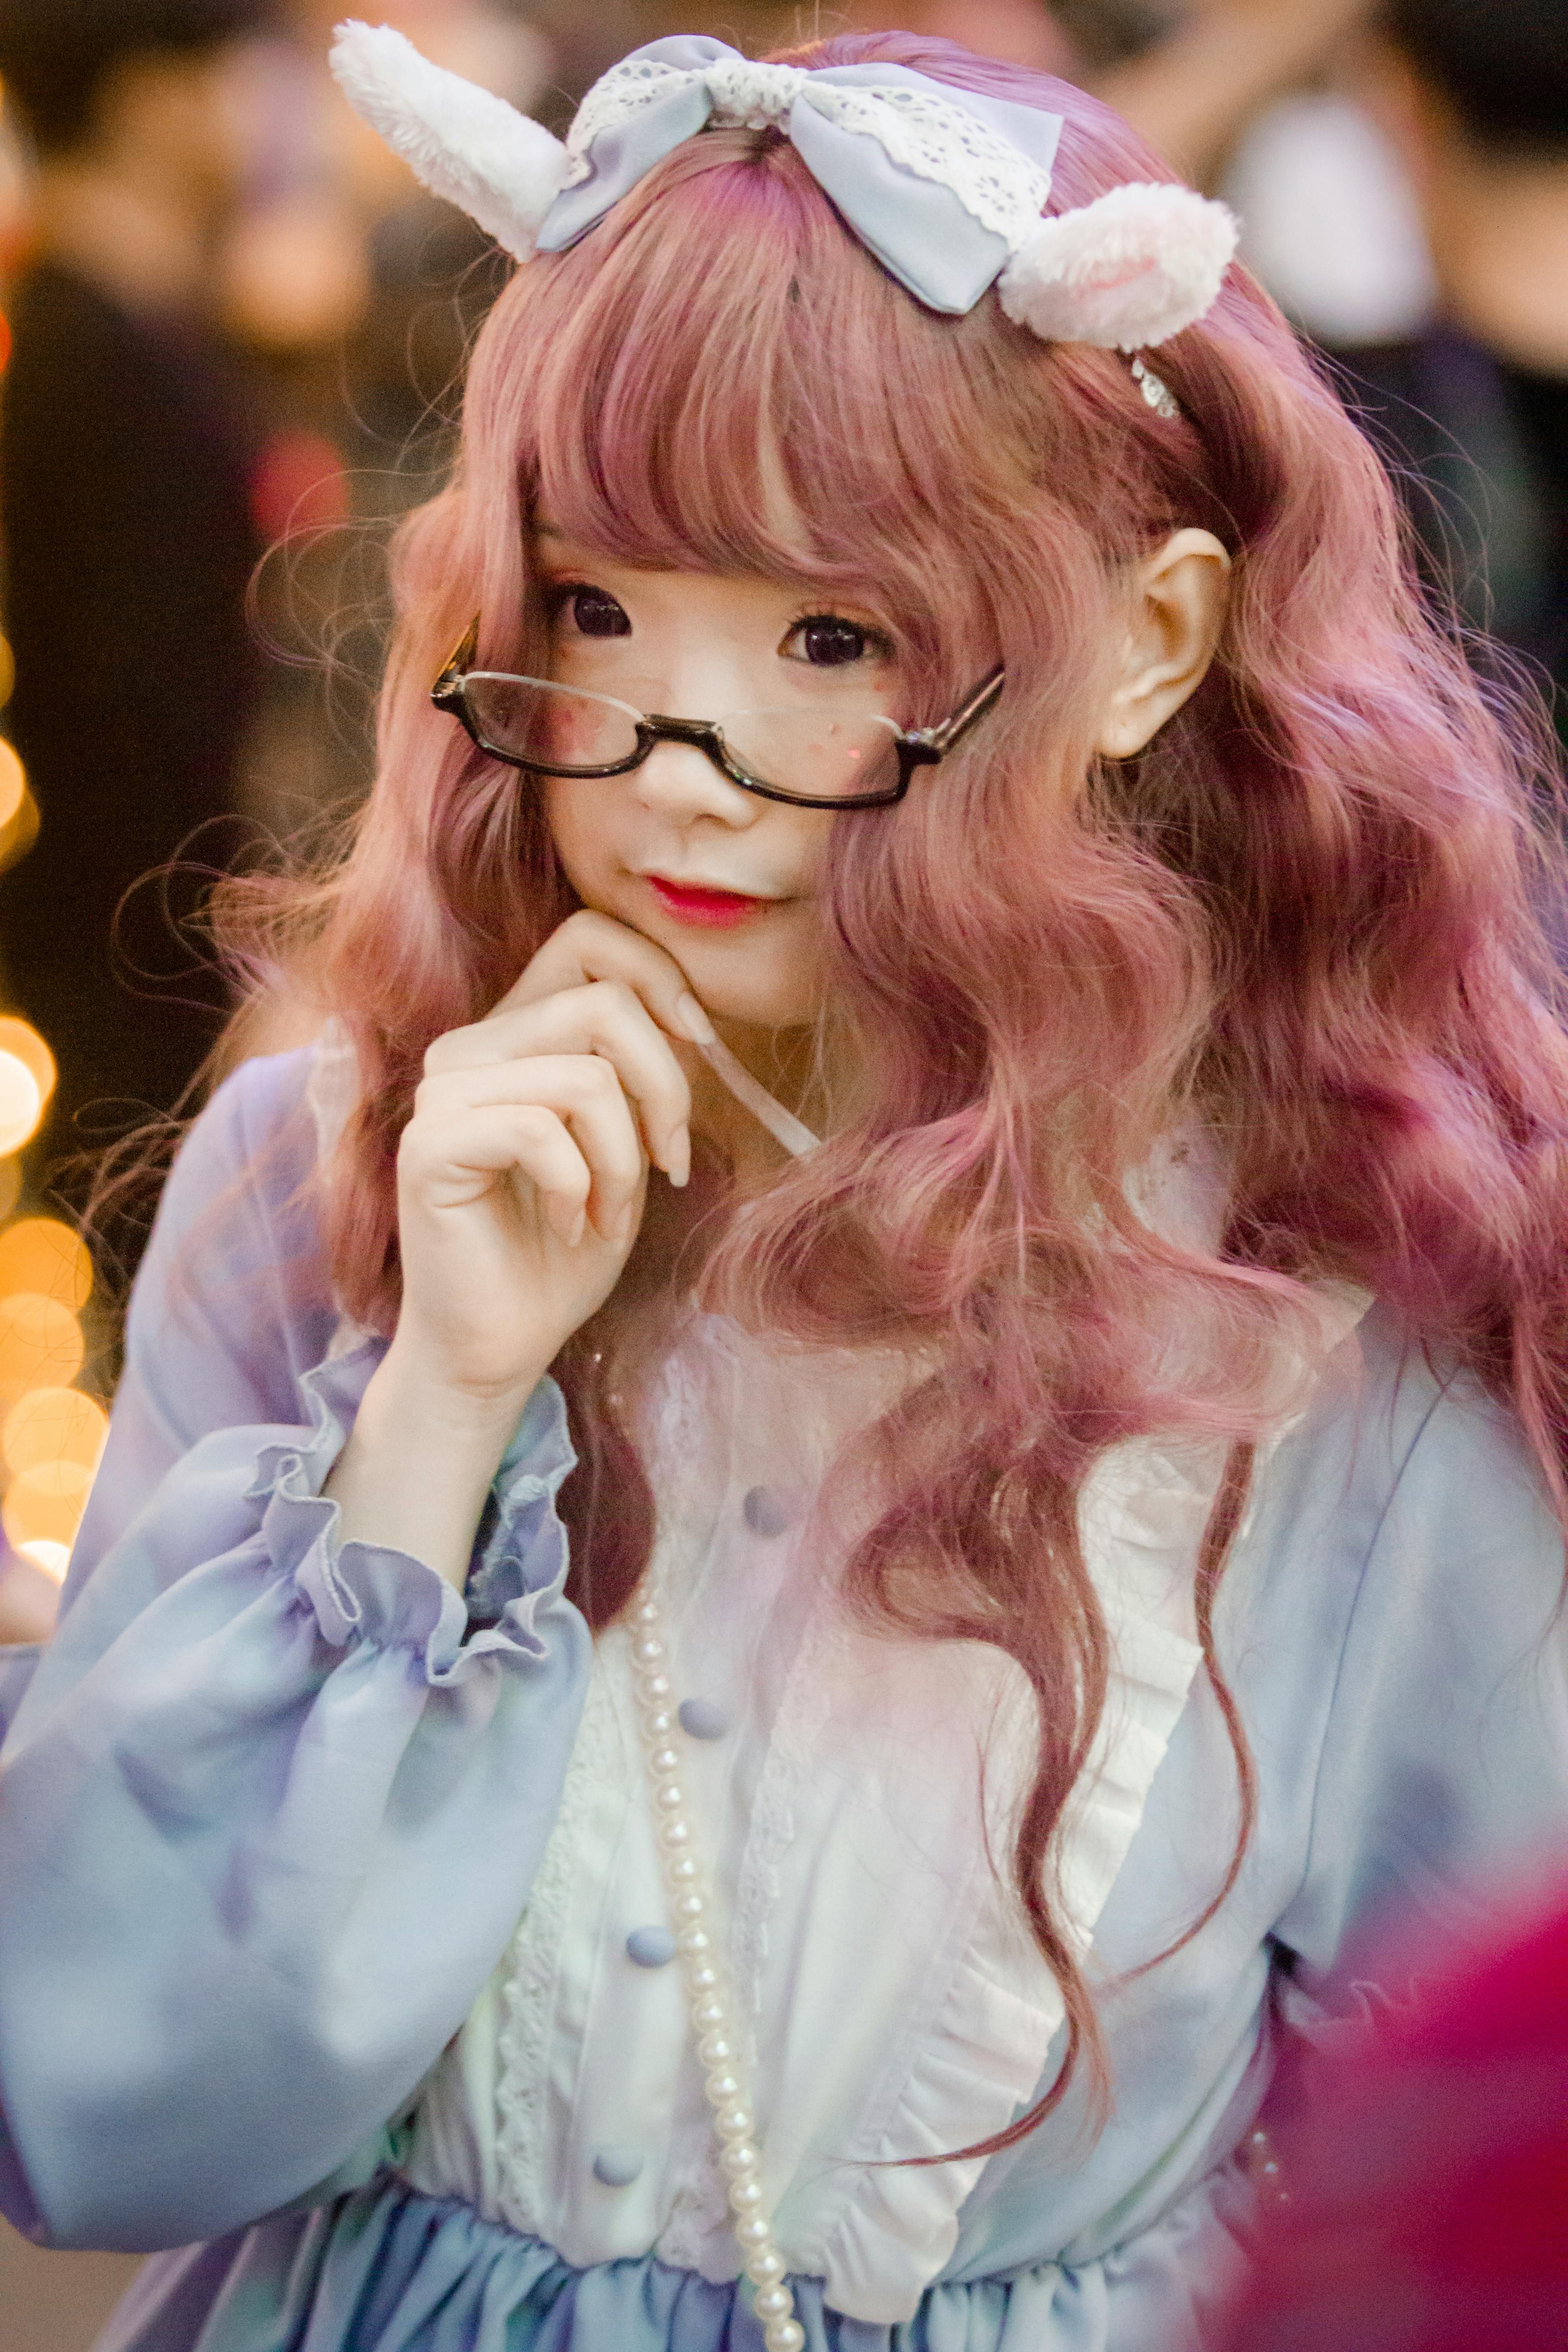 A woman in Lolita fashion attire | Source: Pexels